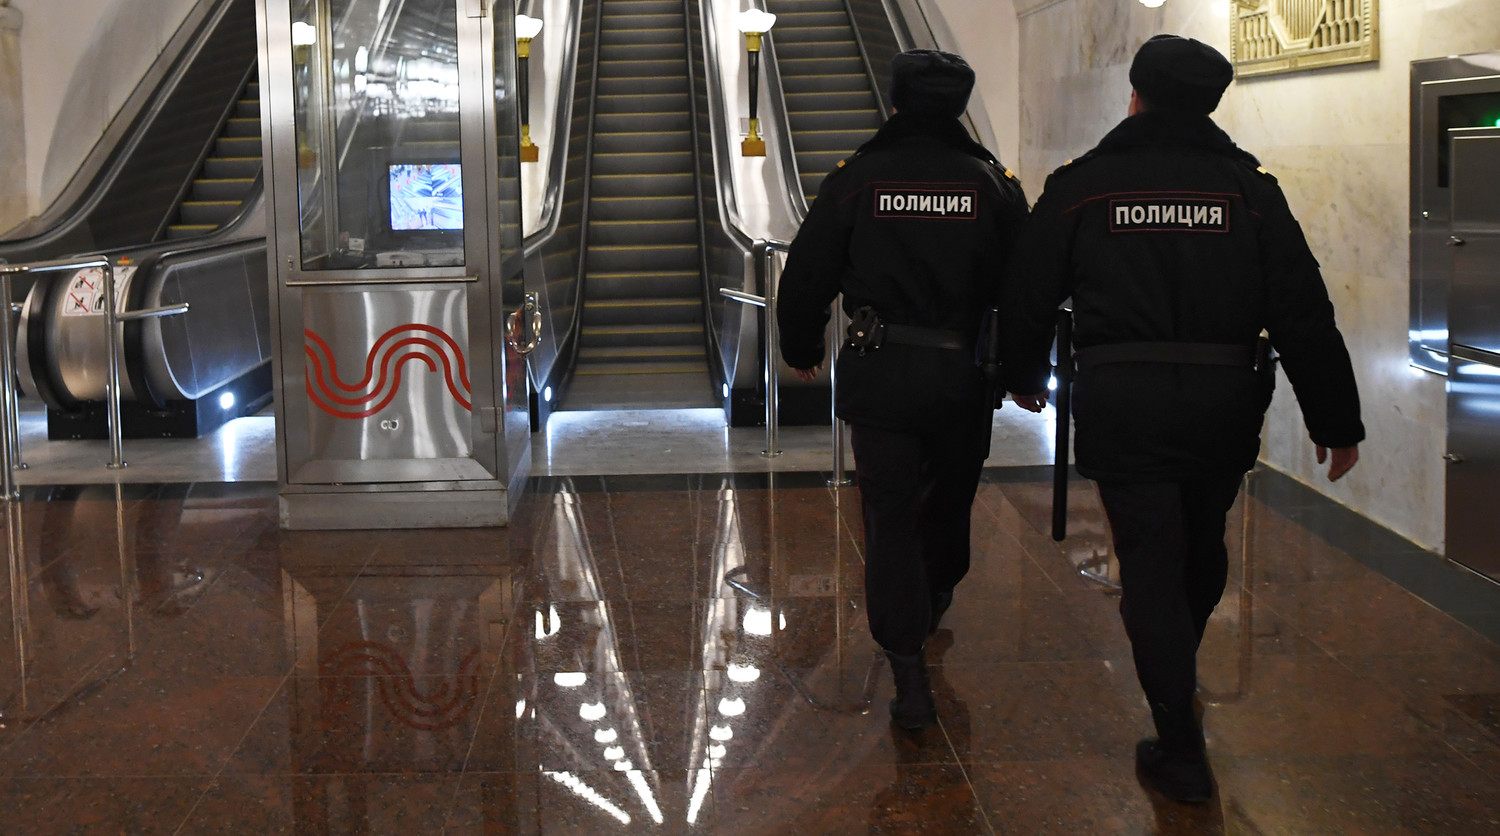 Москвичу вернули забытый в метро пакет с деньгами